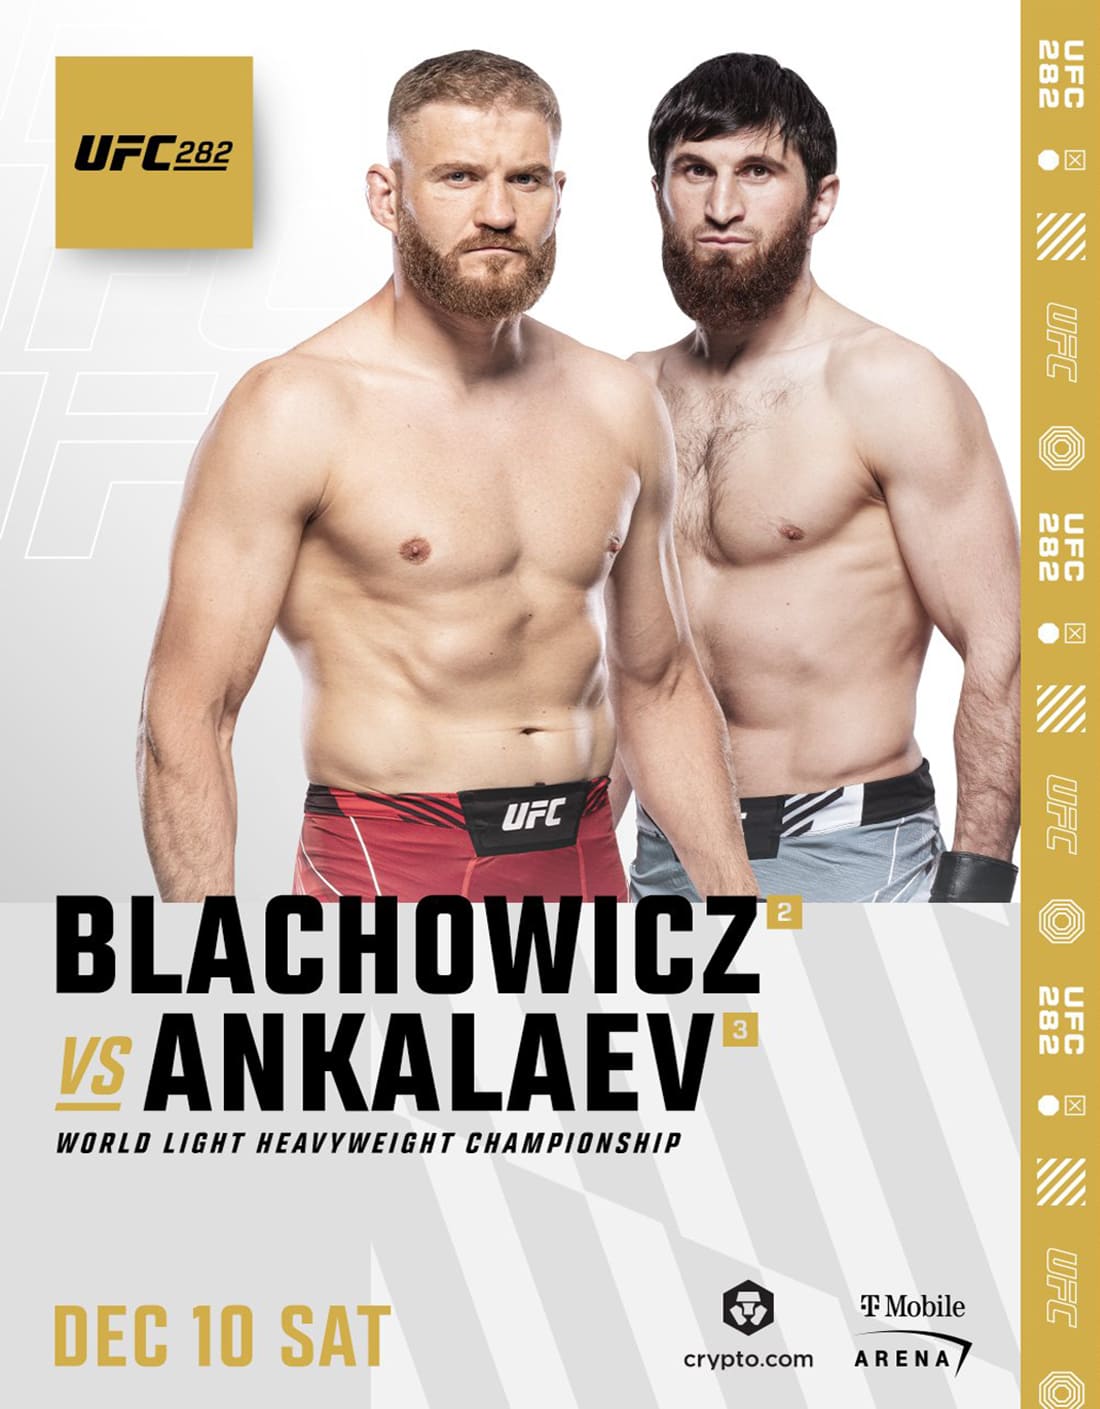 UFC 282: Блахович - Анкалаев дата проведения, кард, участники и результаты